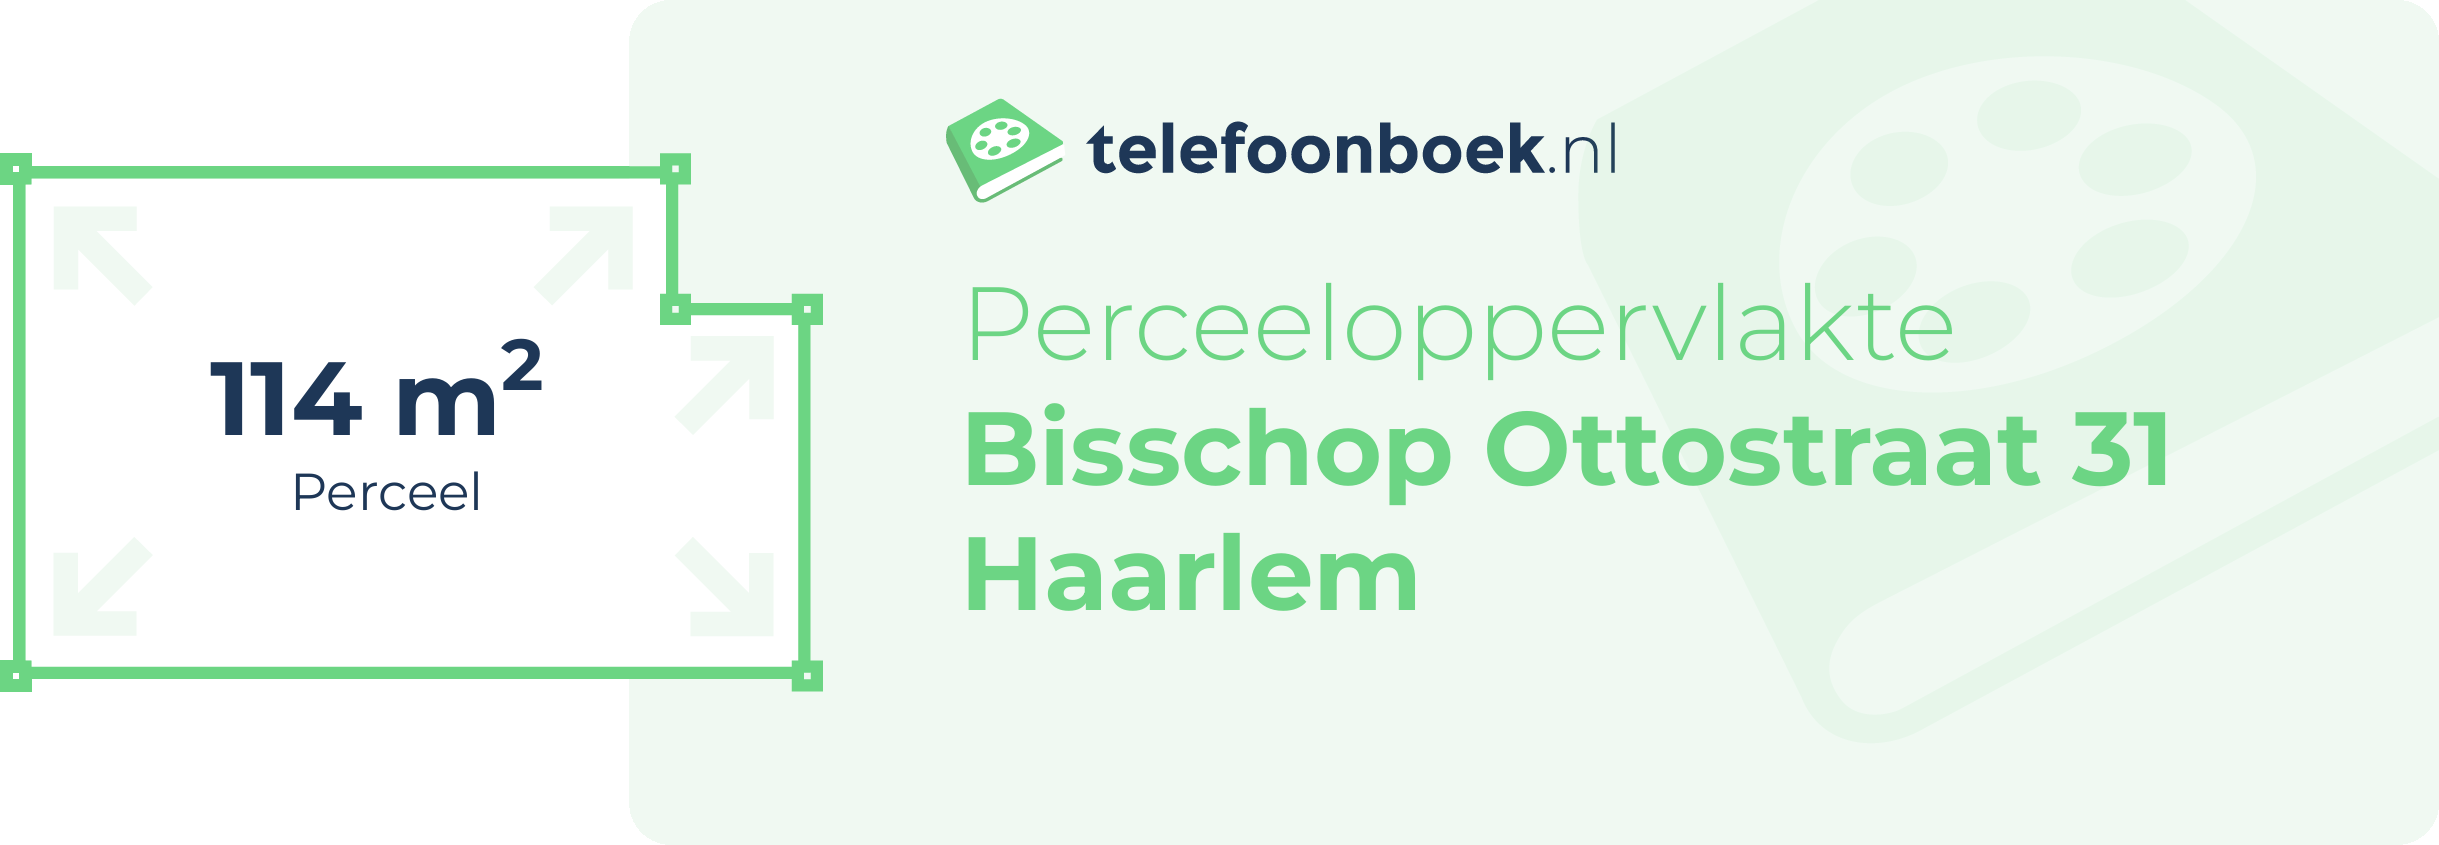 Perceeloppervlakte Bisschop Ottostraat 31 Haarlem